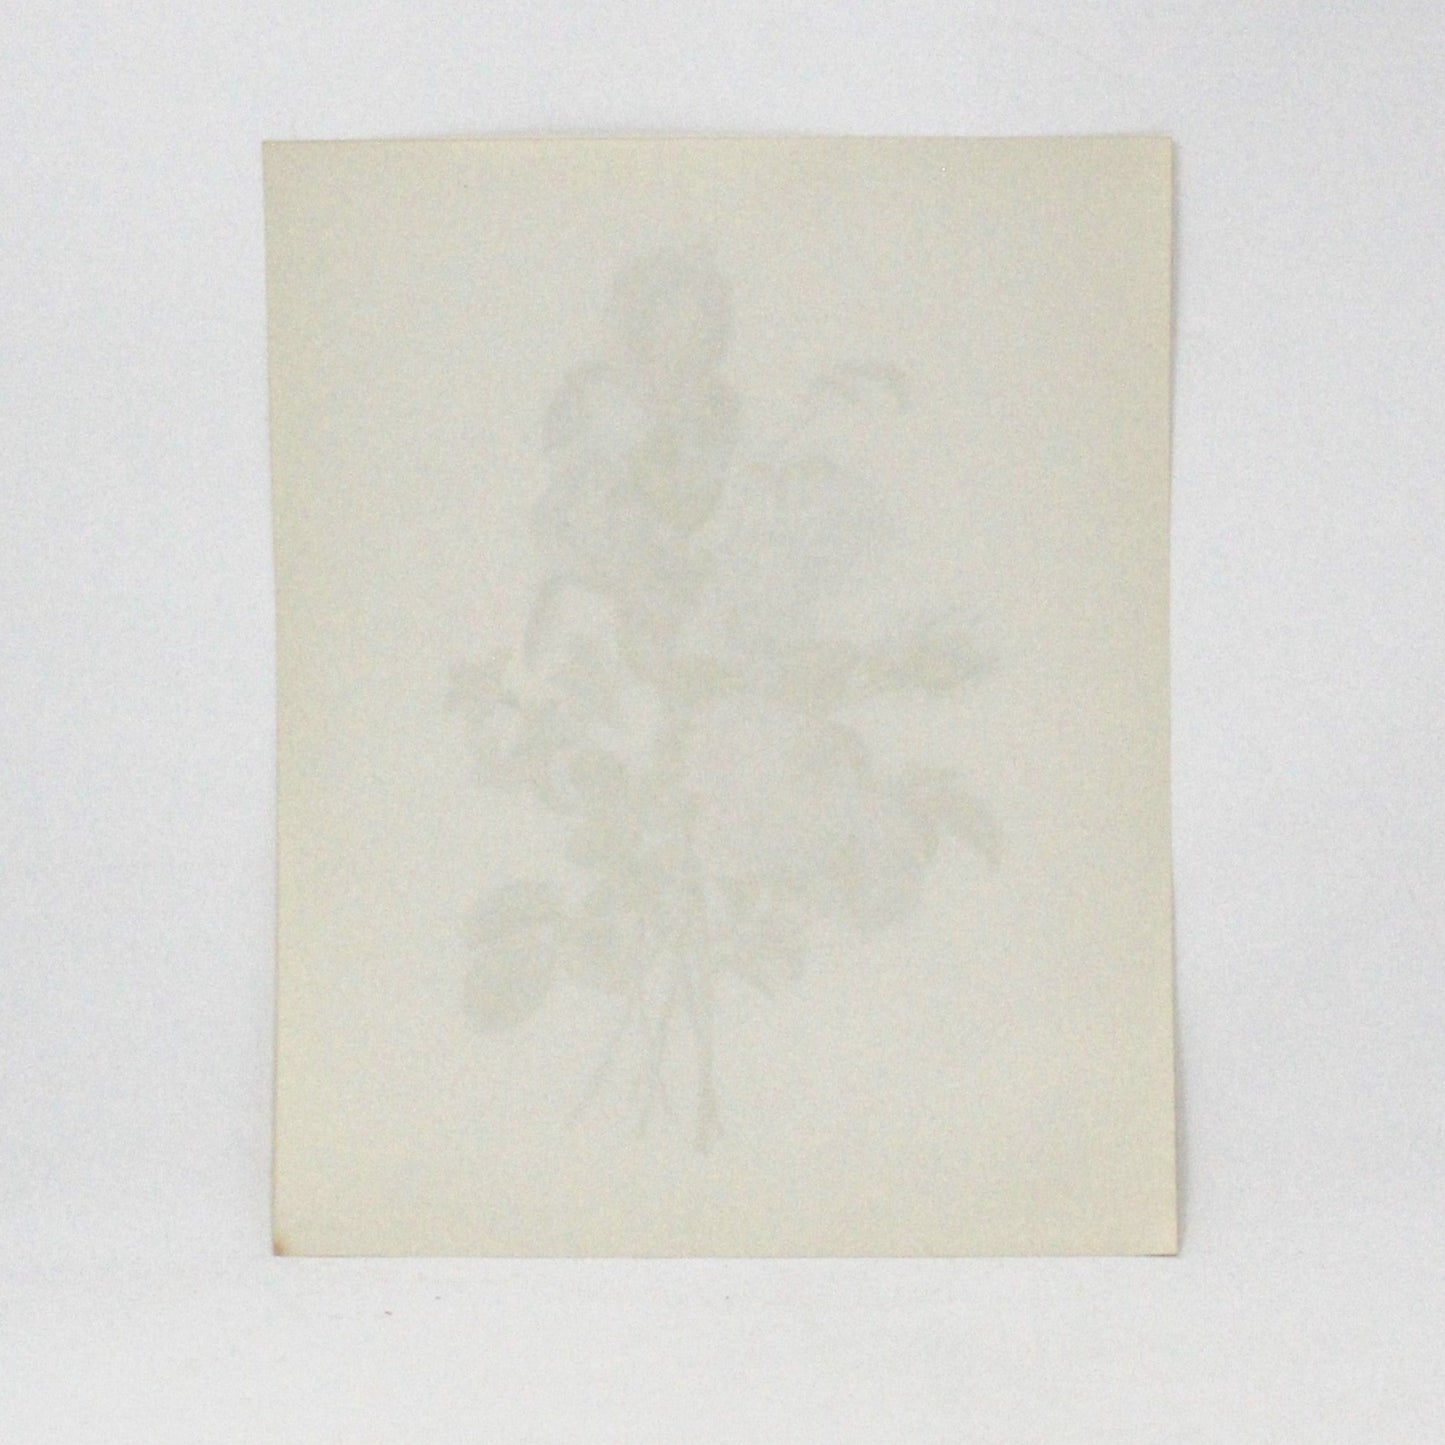 Print, Lithograph, J Prevost, Floral Bouquet #3107, Vintage